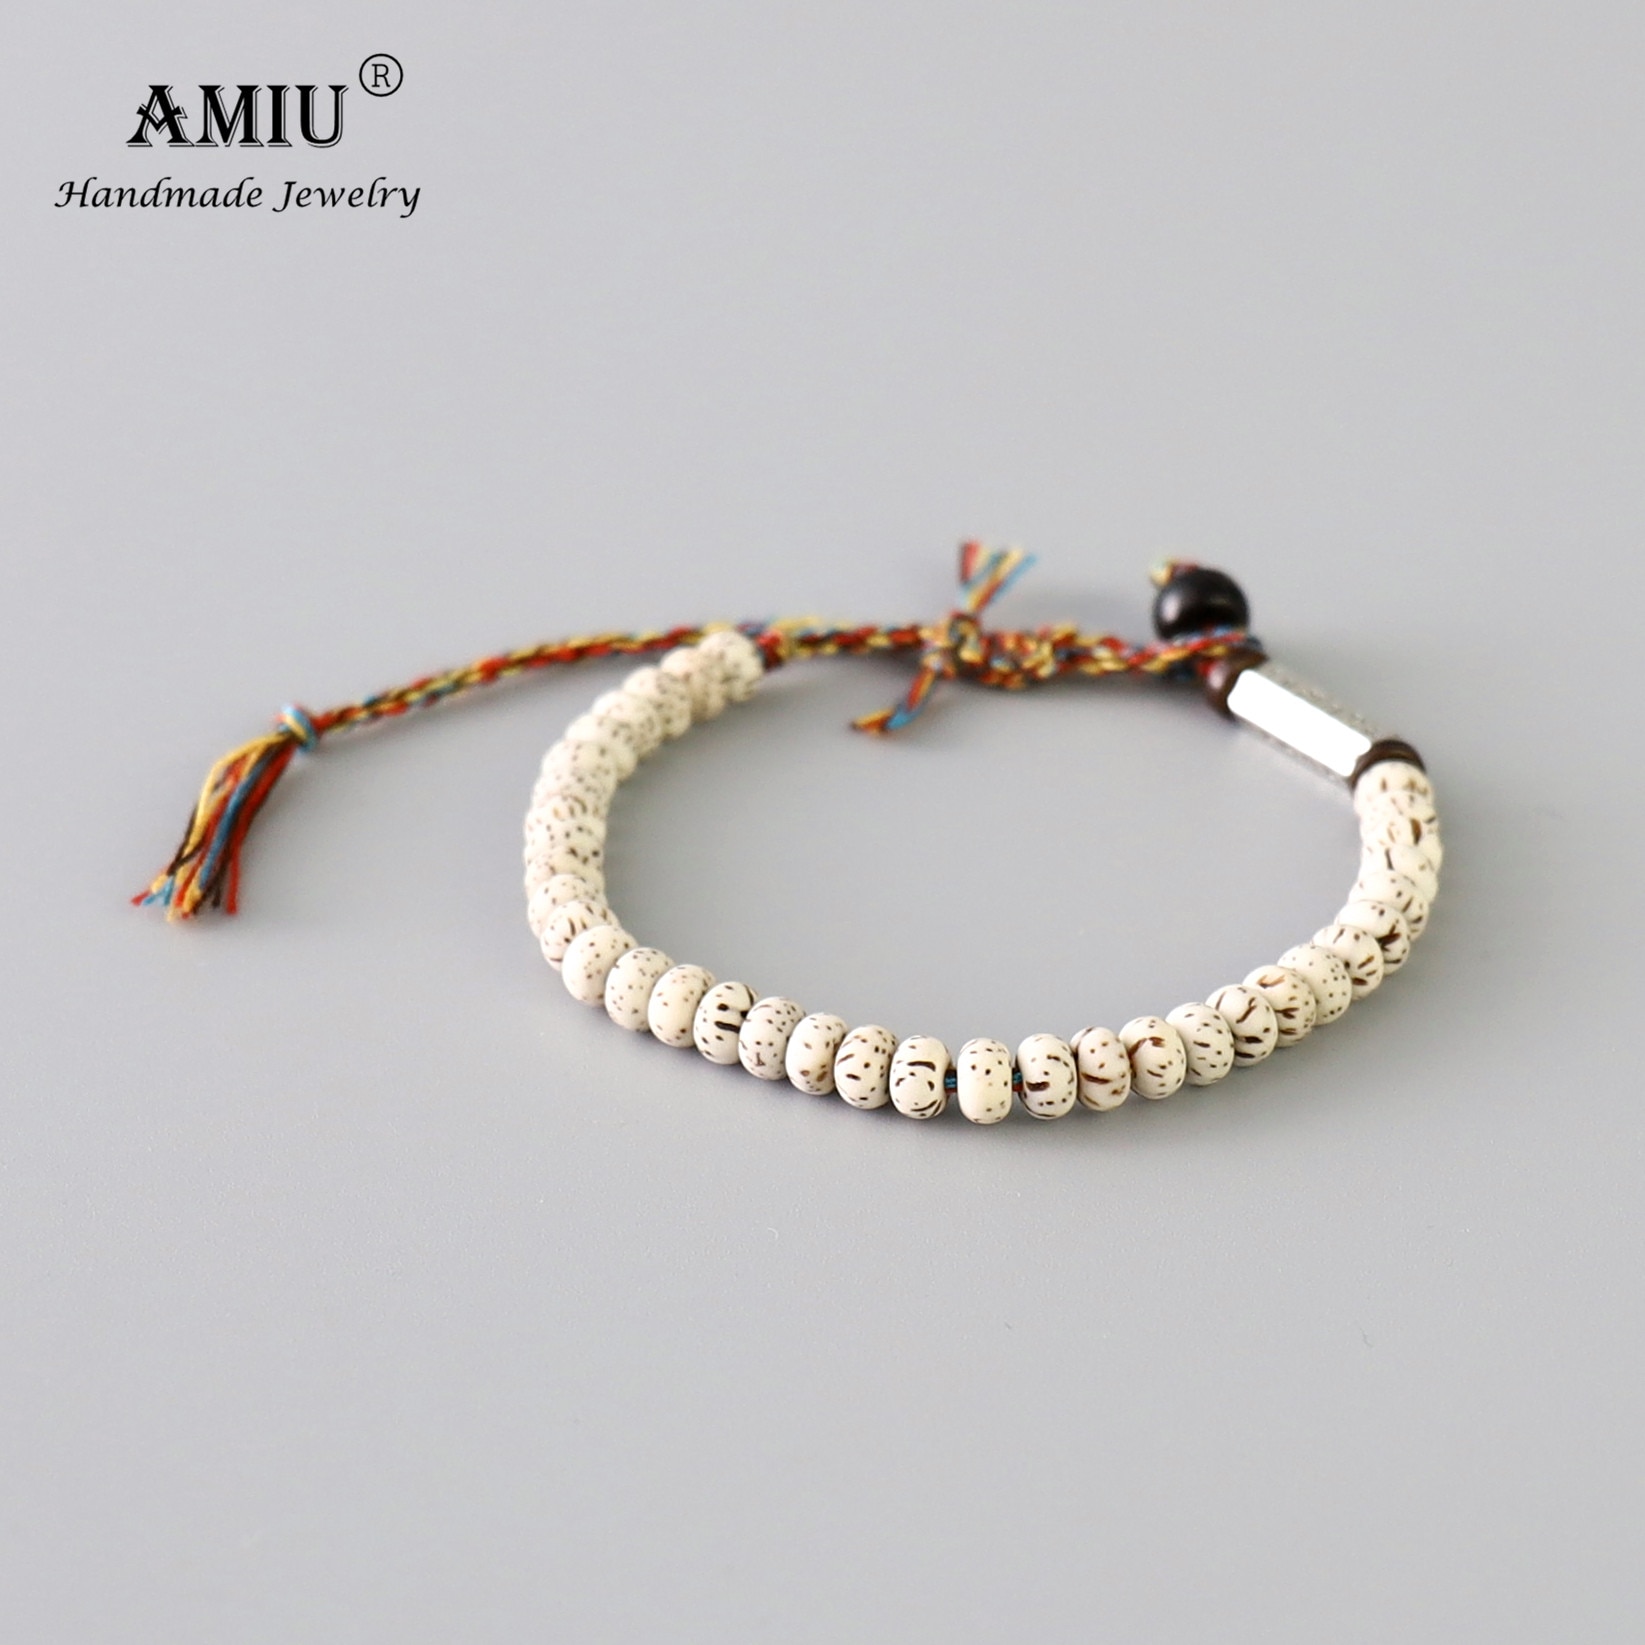 AMIU-tib-tain-bouddhiste-tress-coton-fil-chanceux-noeuds-bracelet-naturel-Bodhi-perles-sculpt-amulette-Bracelet